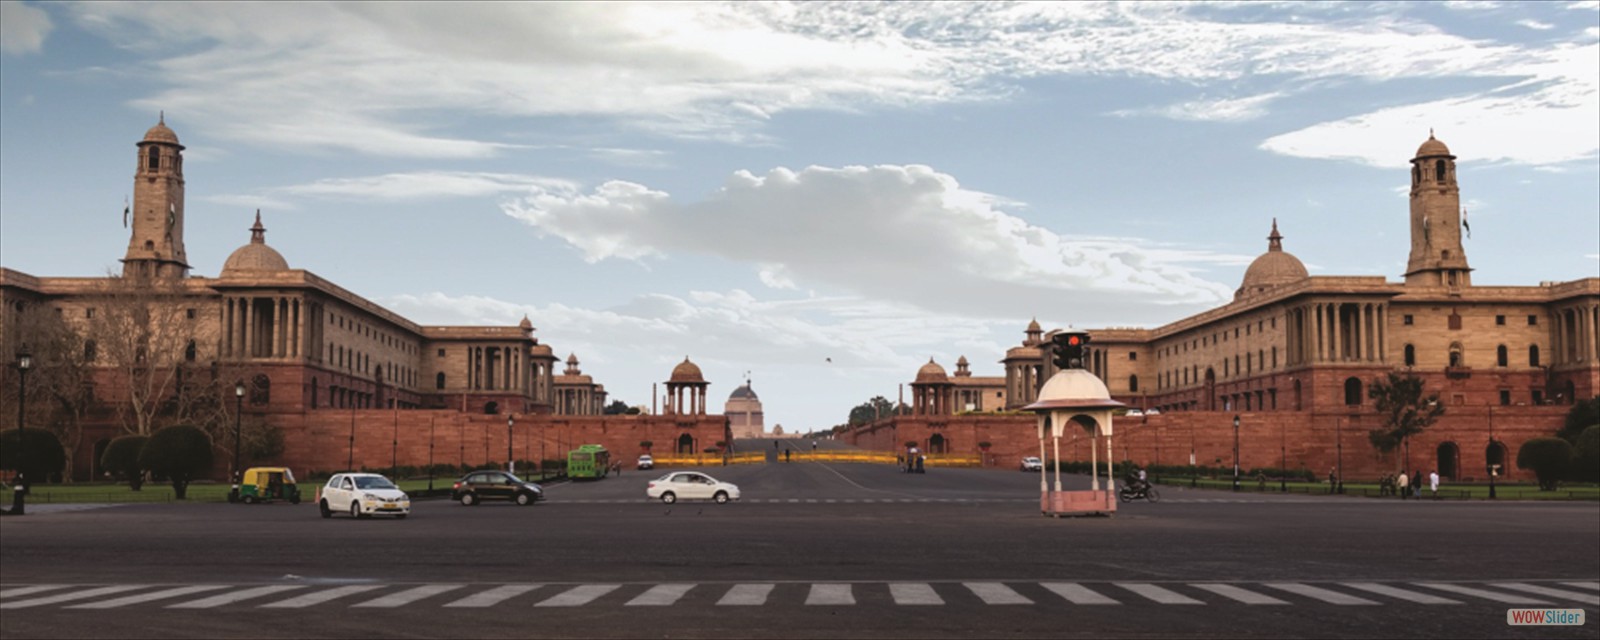 Delhi, The Heart of India